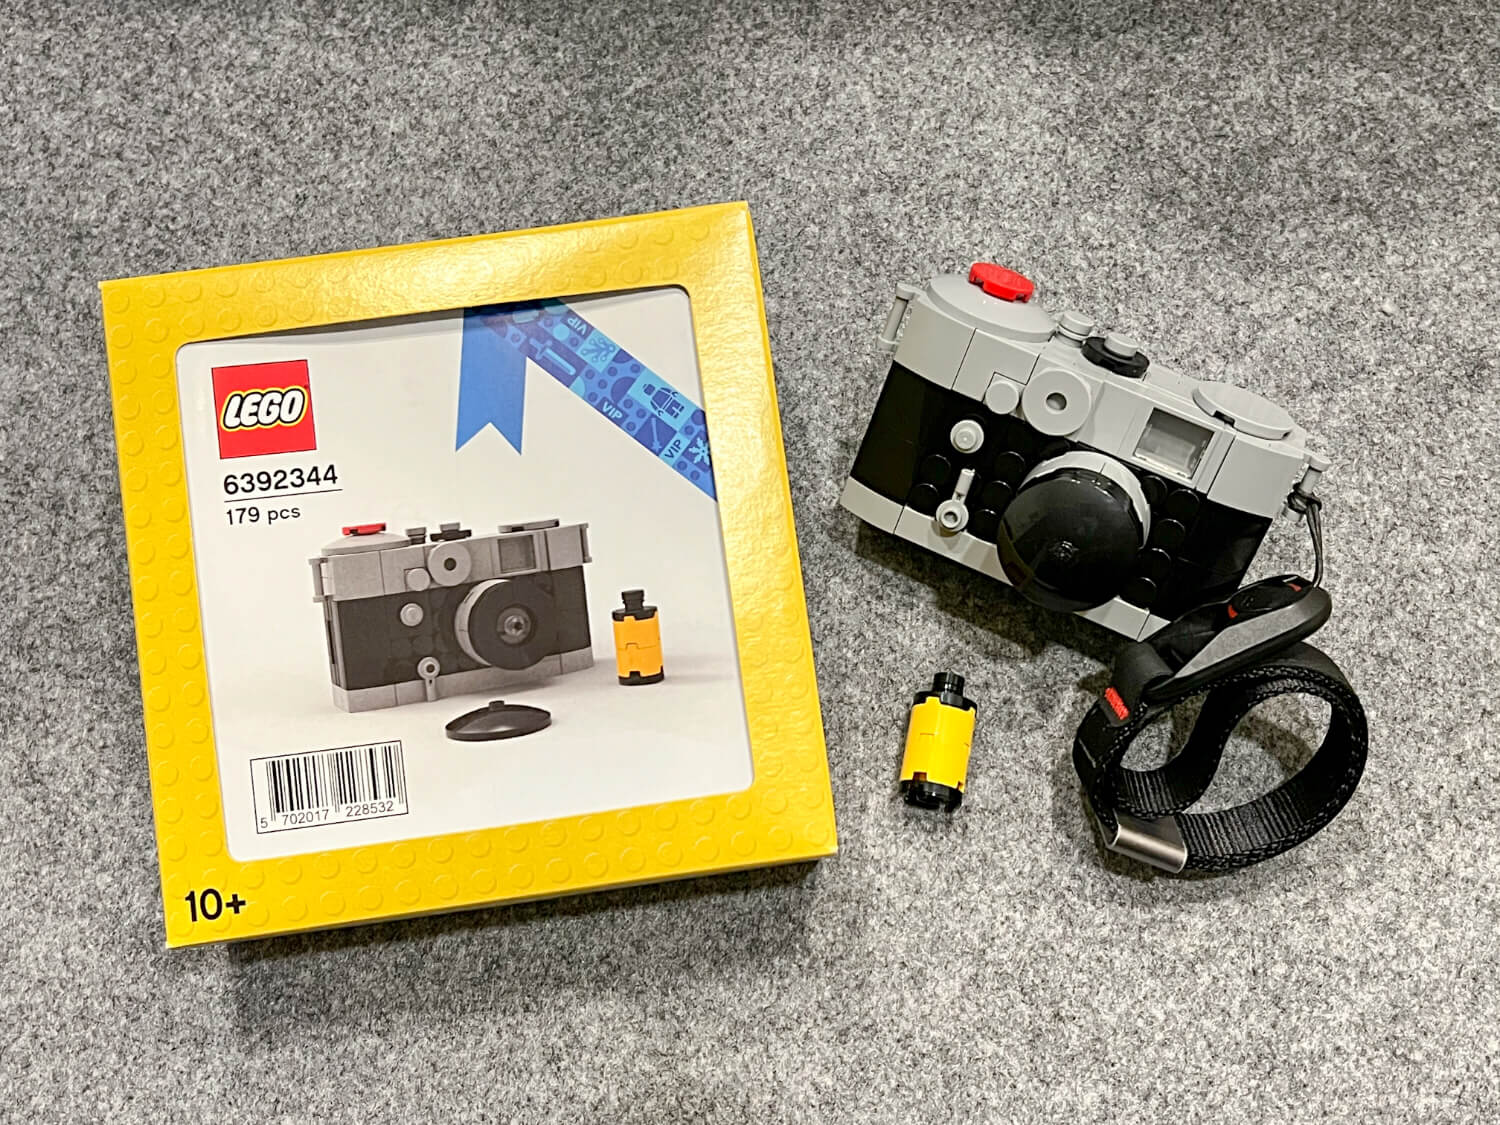 Lego 6392344 VIP Rangefinder Camera and box - plus bonus Peak Design Leash